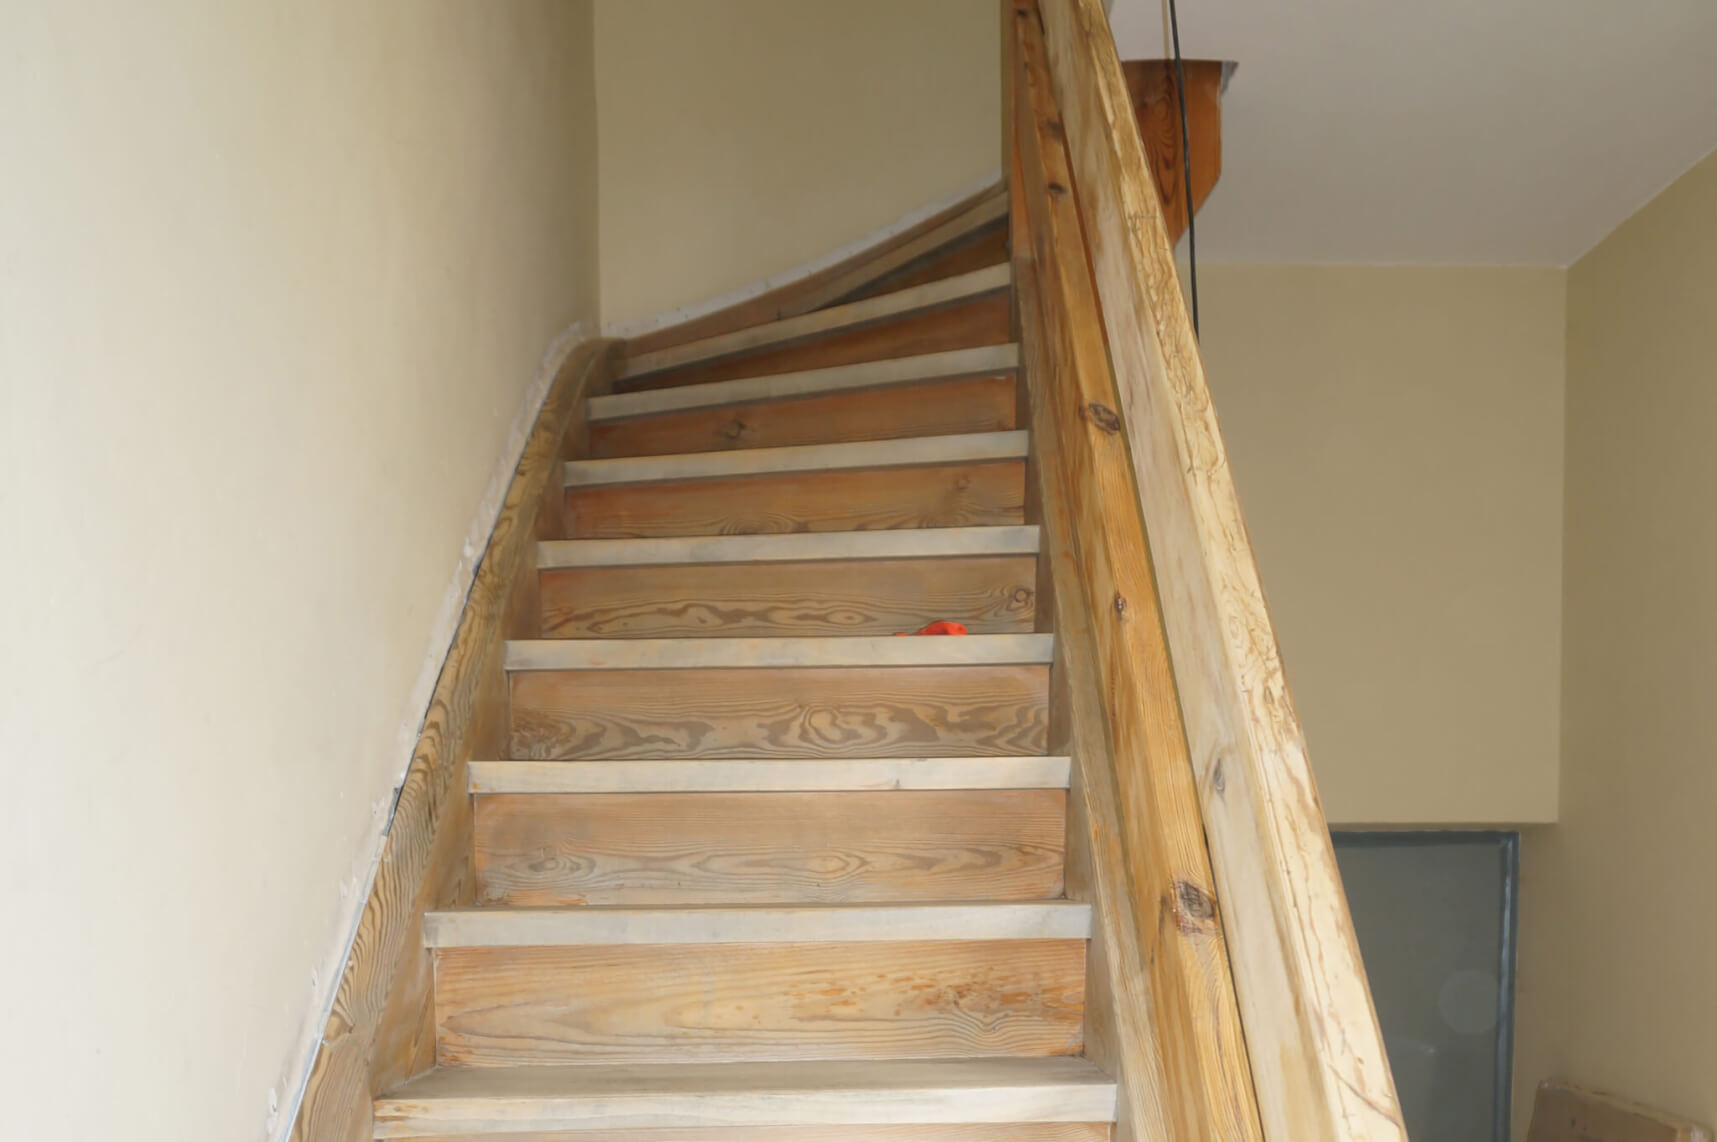 Escalera en la casa como decoración interior moderna nuevo revestimiento en aspecto de madera 02